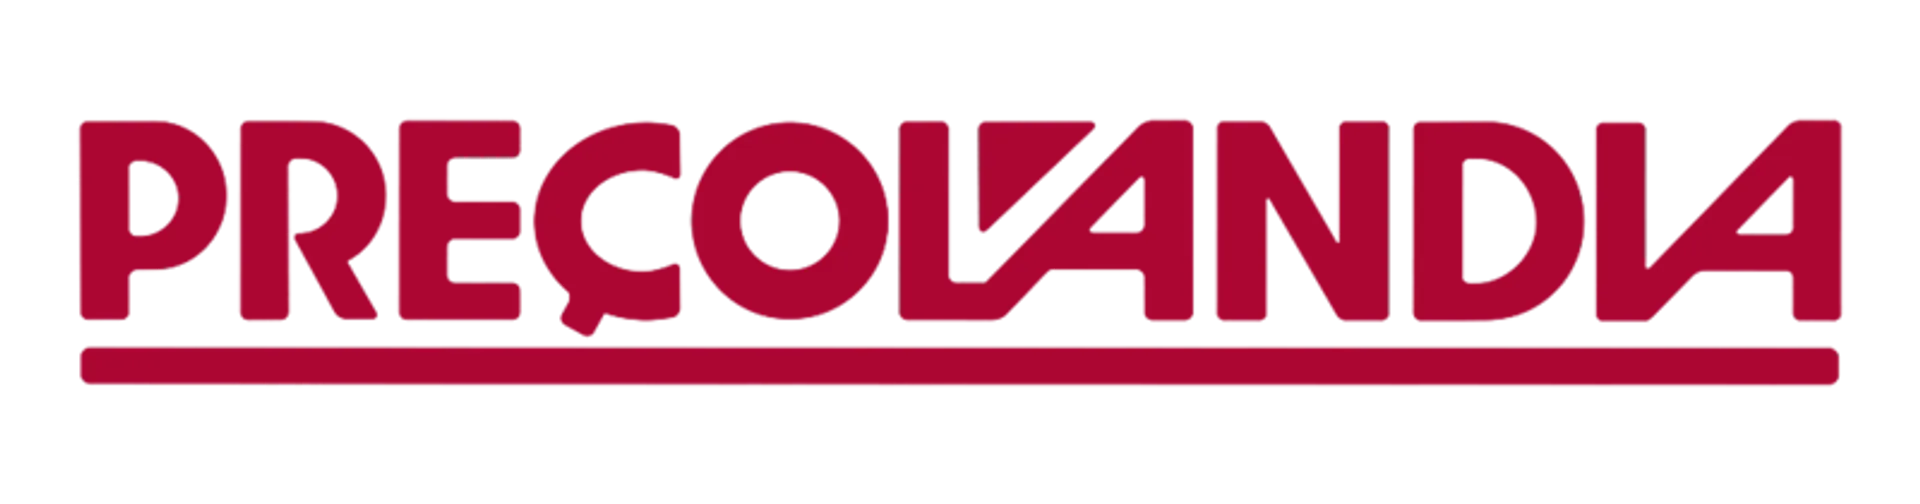 PRECOLANDIA logo